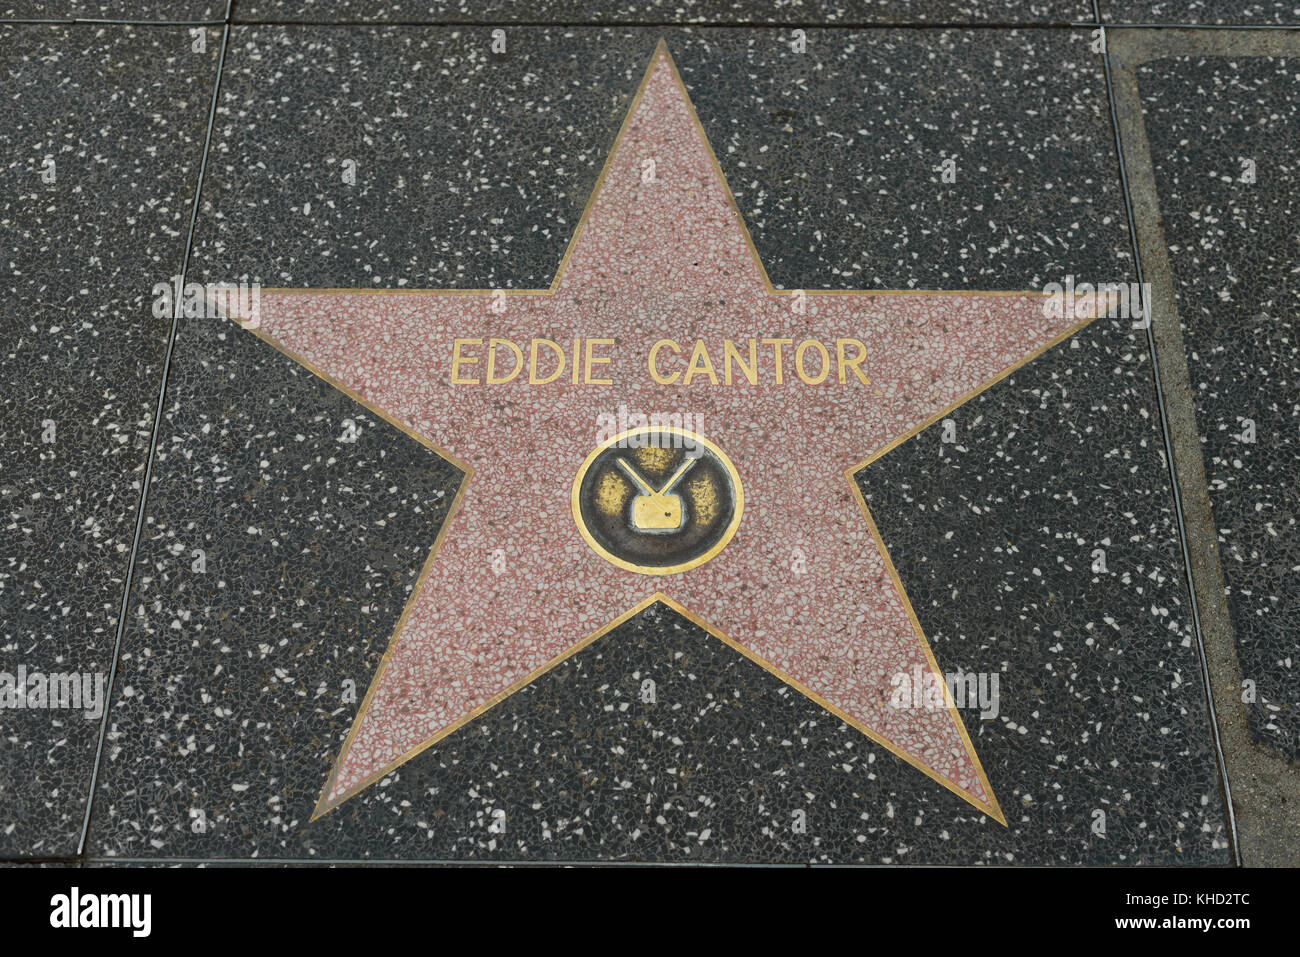 HOLLYWOOD, CA - DICEMBRE 06: Stella di Eddie Cantor sulla Hollywood Walk of Fame a Hollywood, California il 6 dicembre 2016. Foto Stock